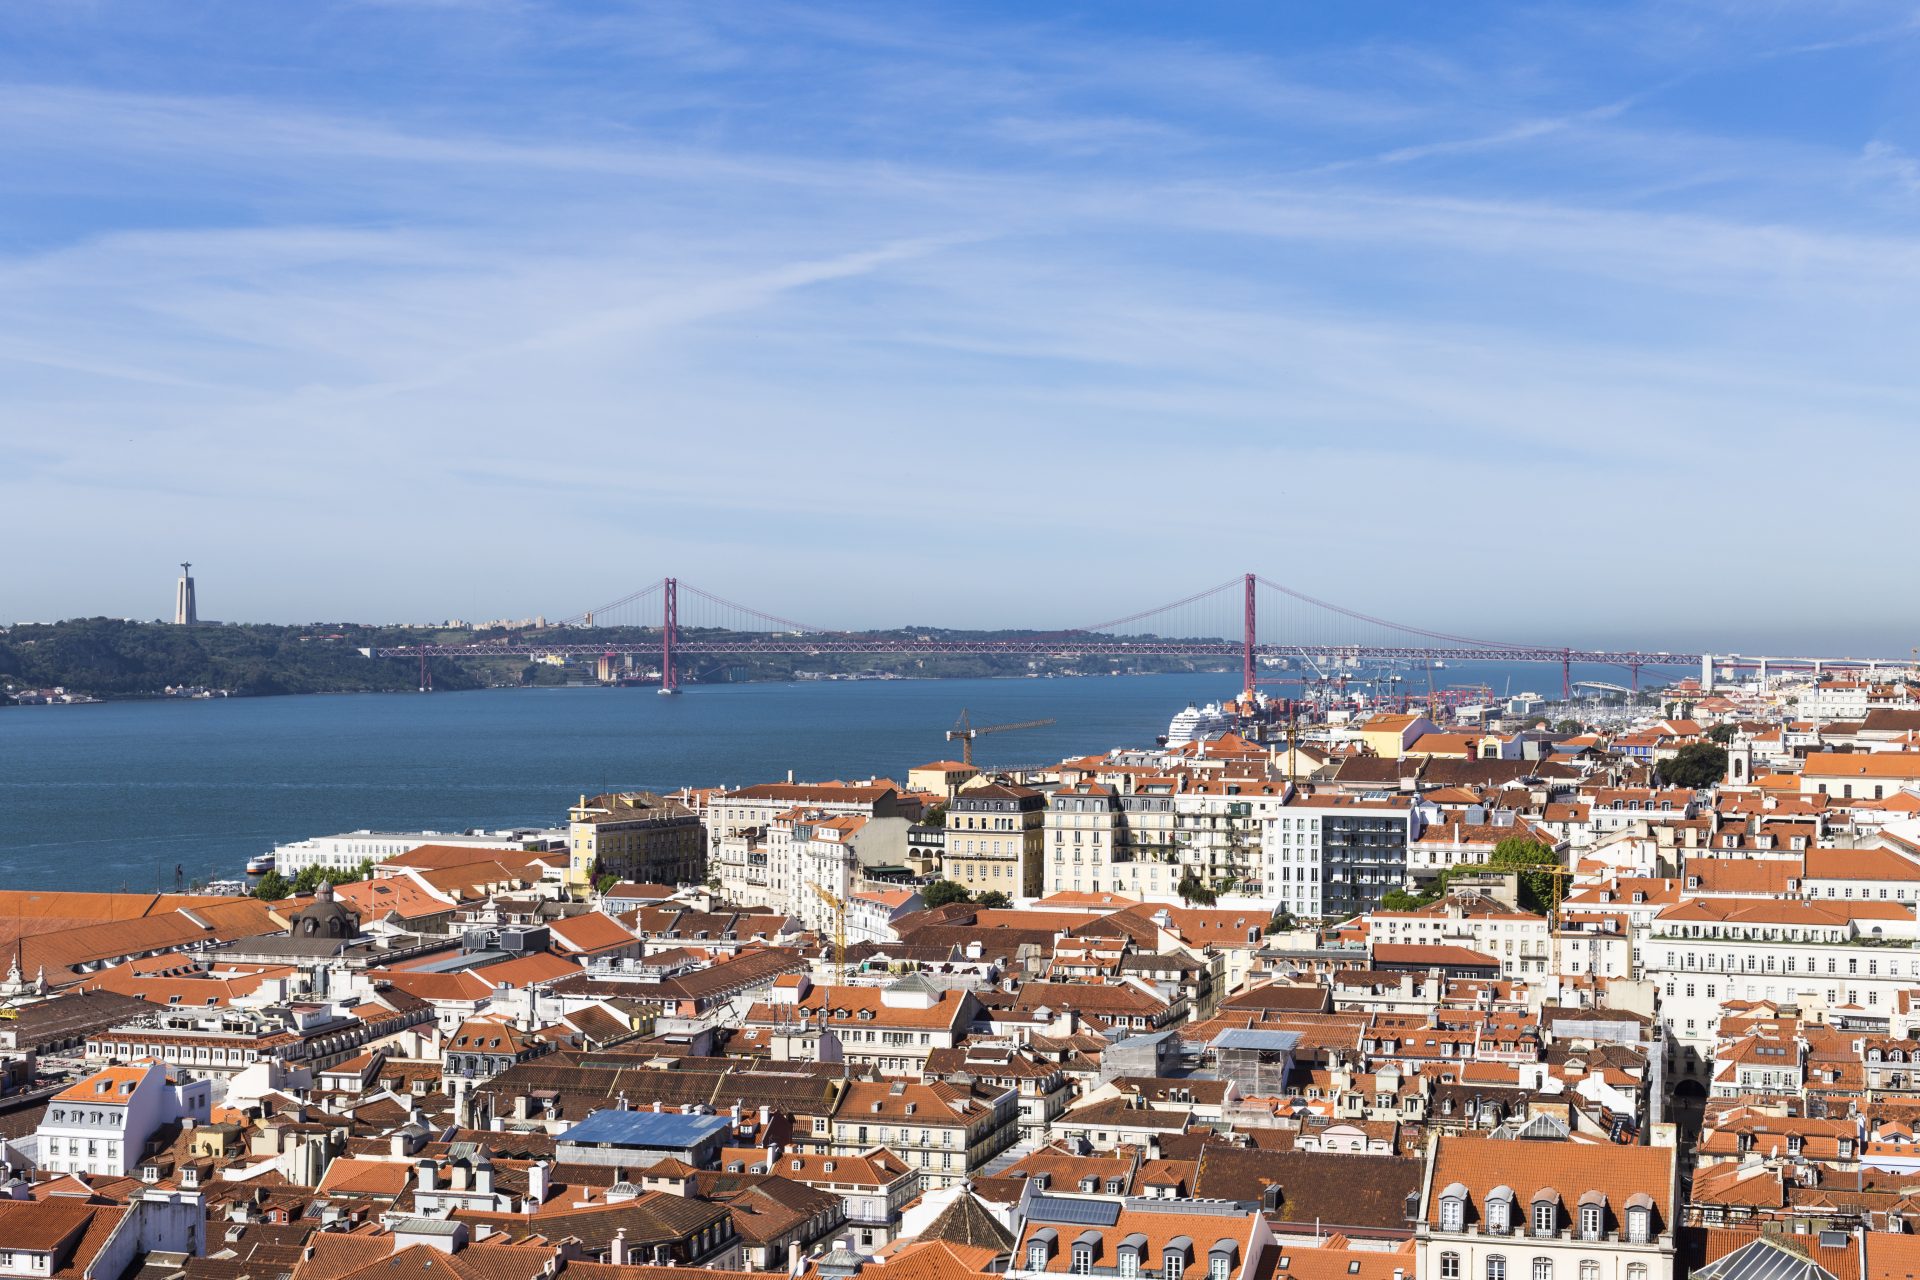 Aumento das taxas turísticas em Lisboa é medida ‘precipitada’